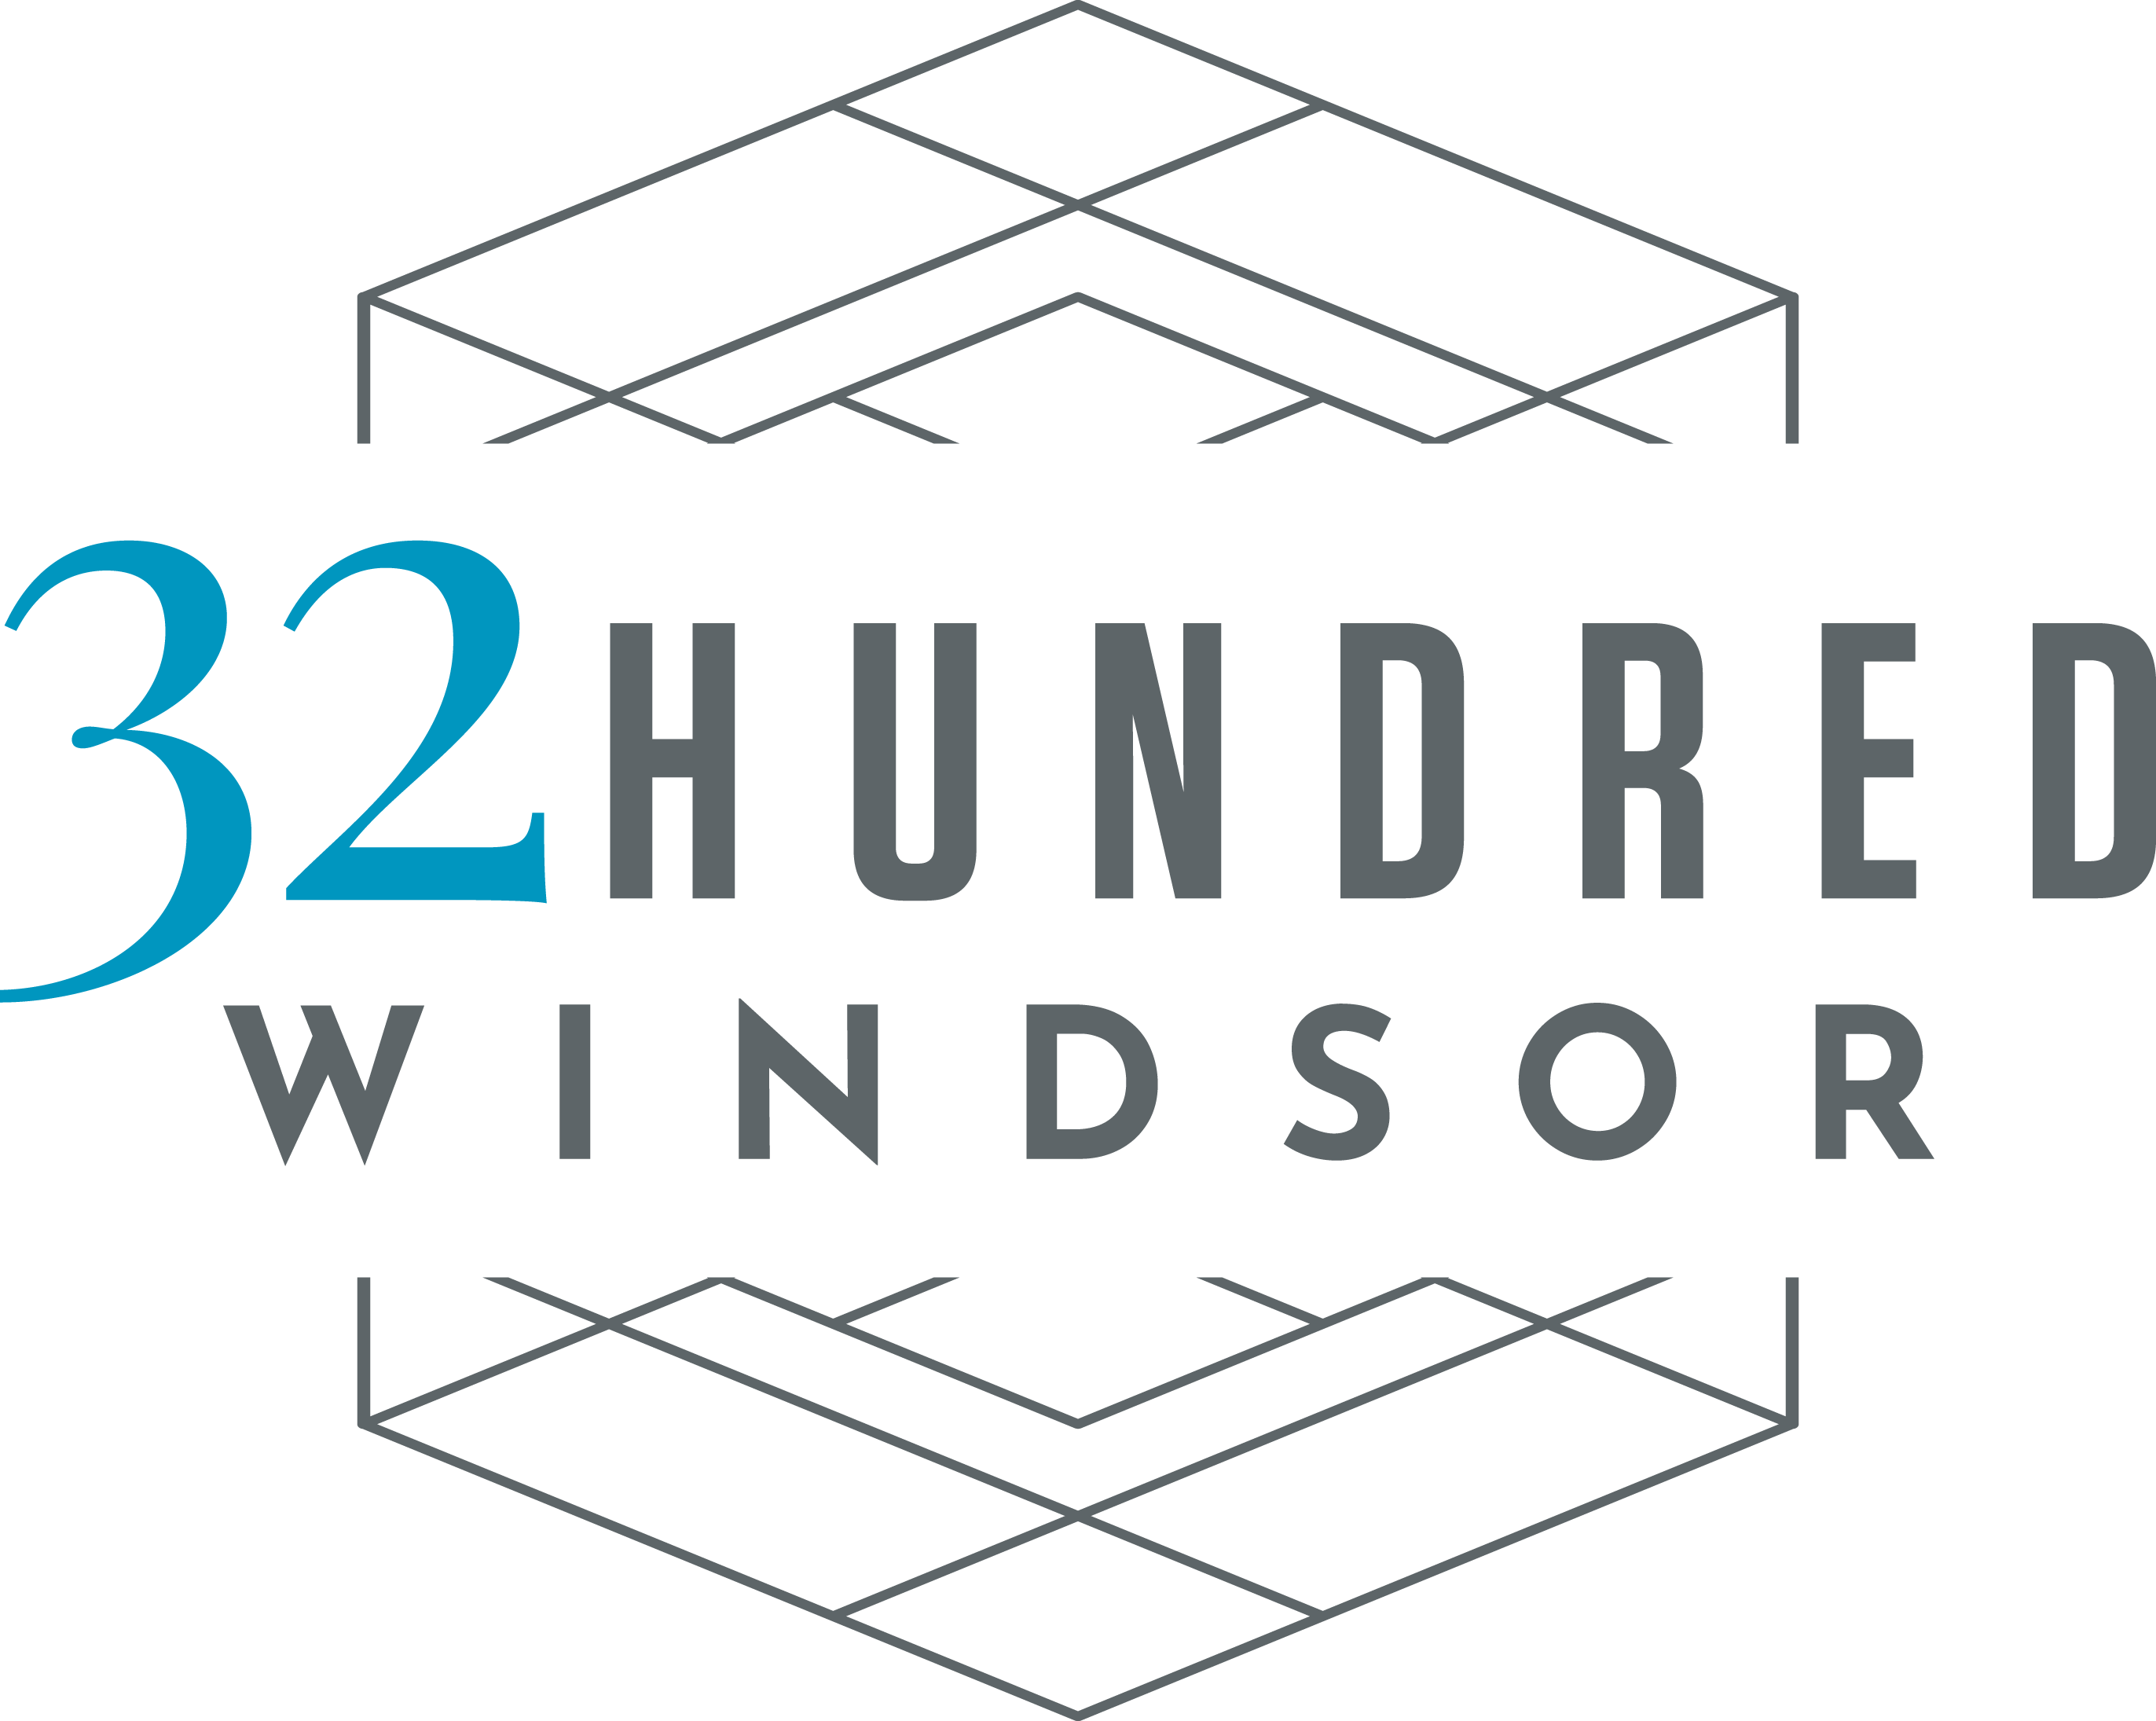 32Hundred Windsor Logo